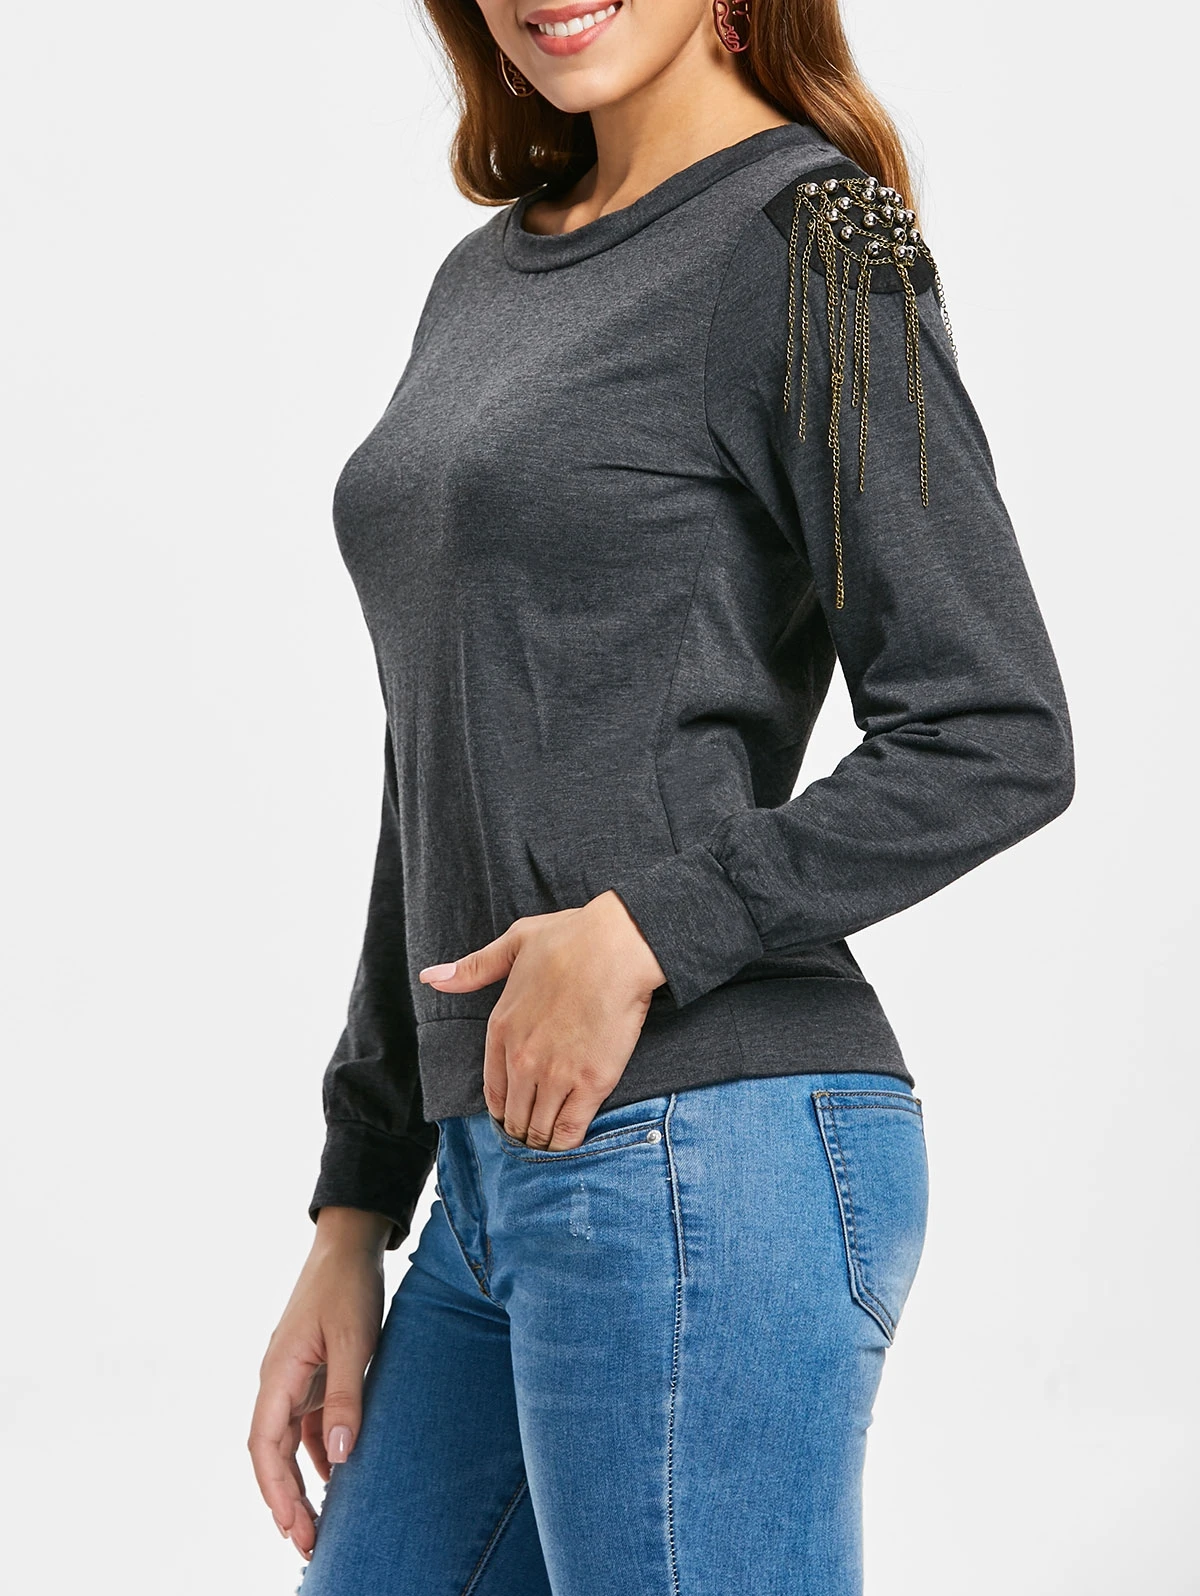 

Alluring Women's Long Sleeve Jewel Neck Solid Color Hoodies Sweatshirts